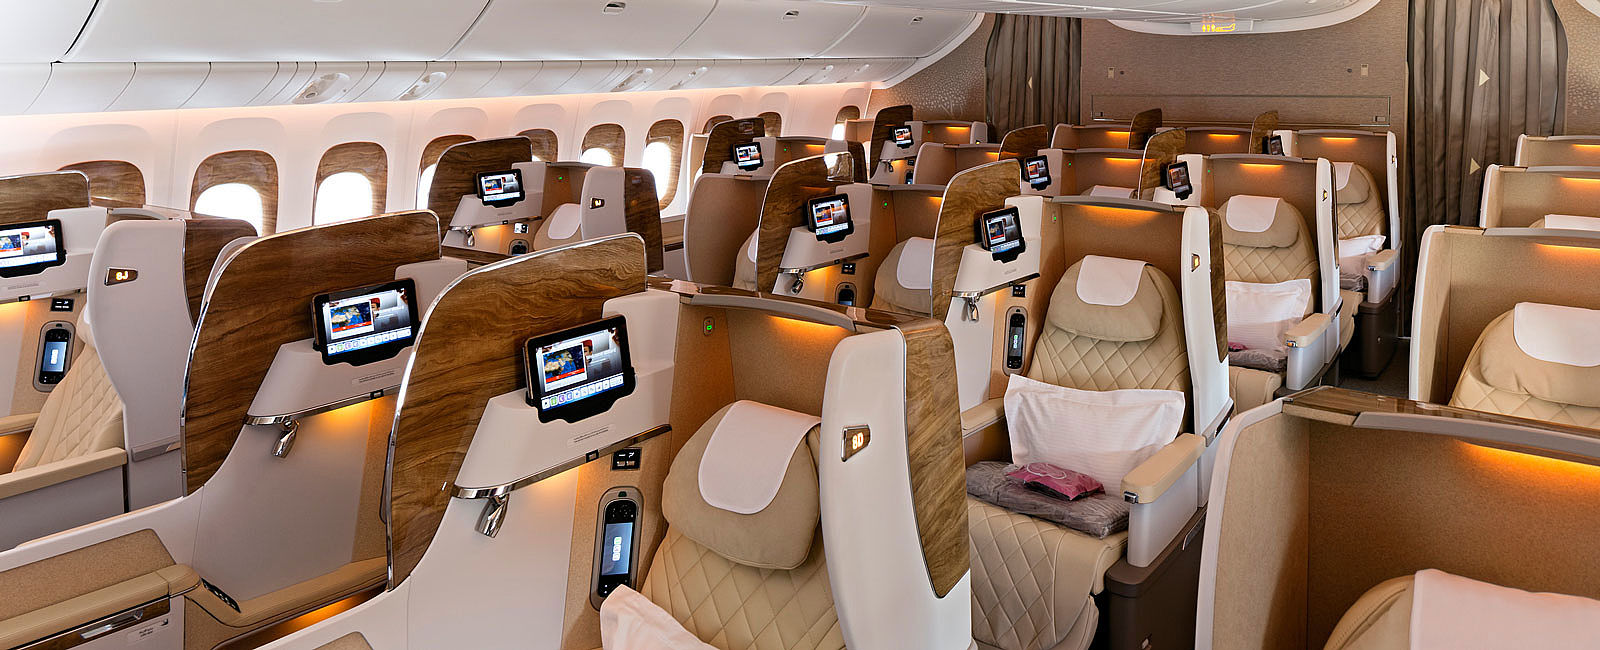 Emirates Game Changer First Class Suite Feiert Premiere Auf